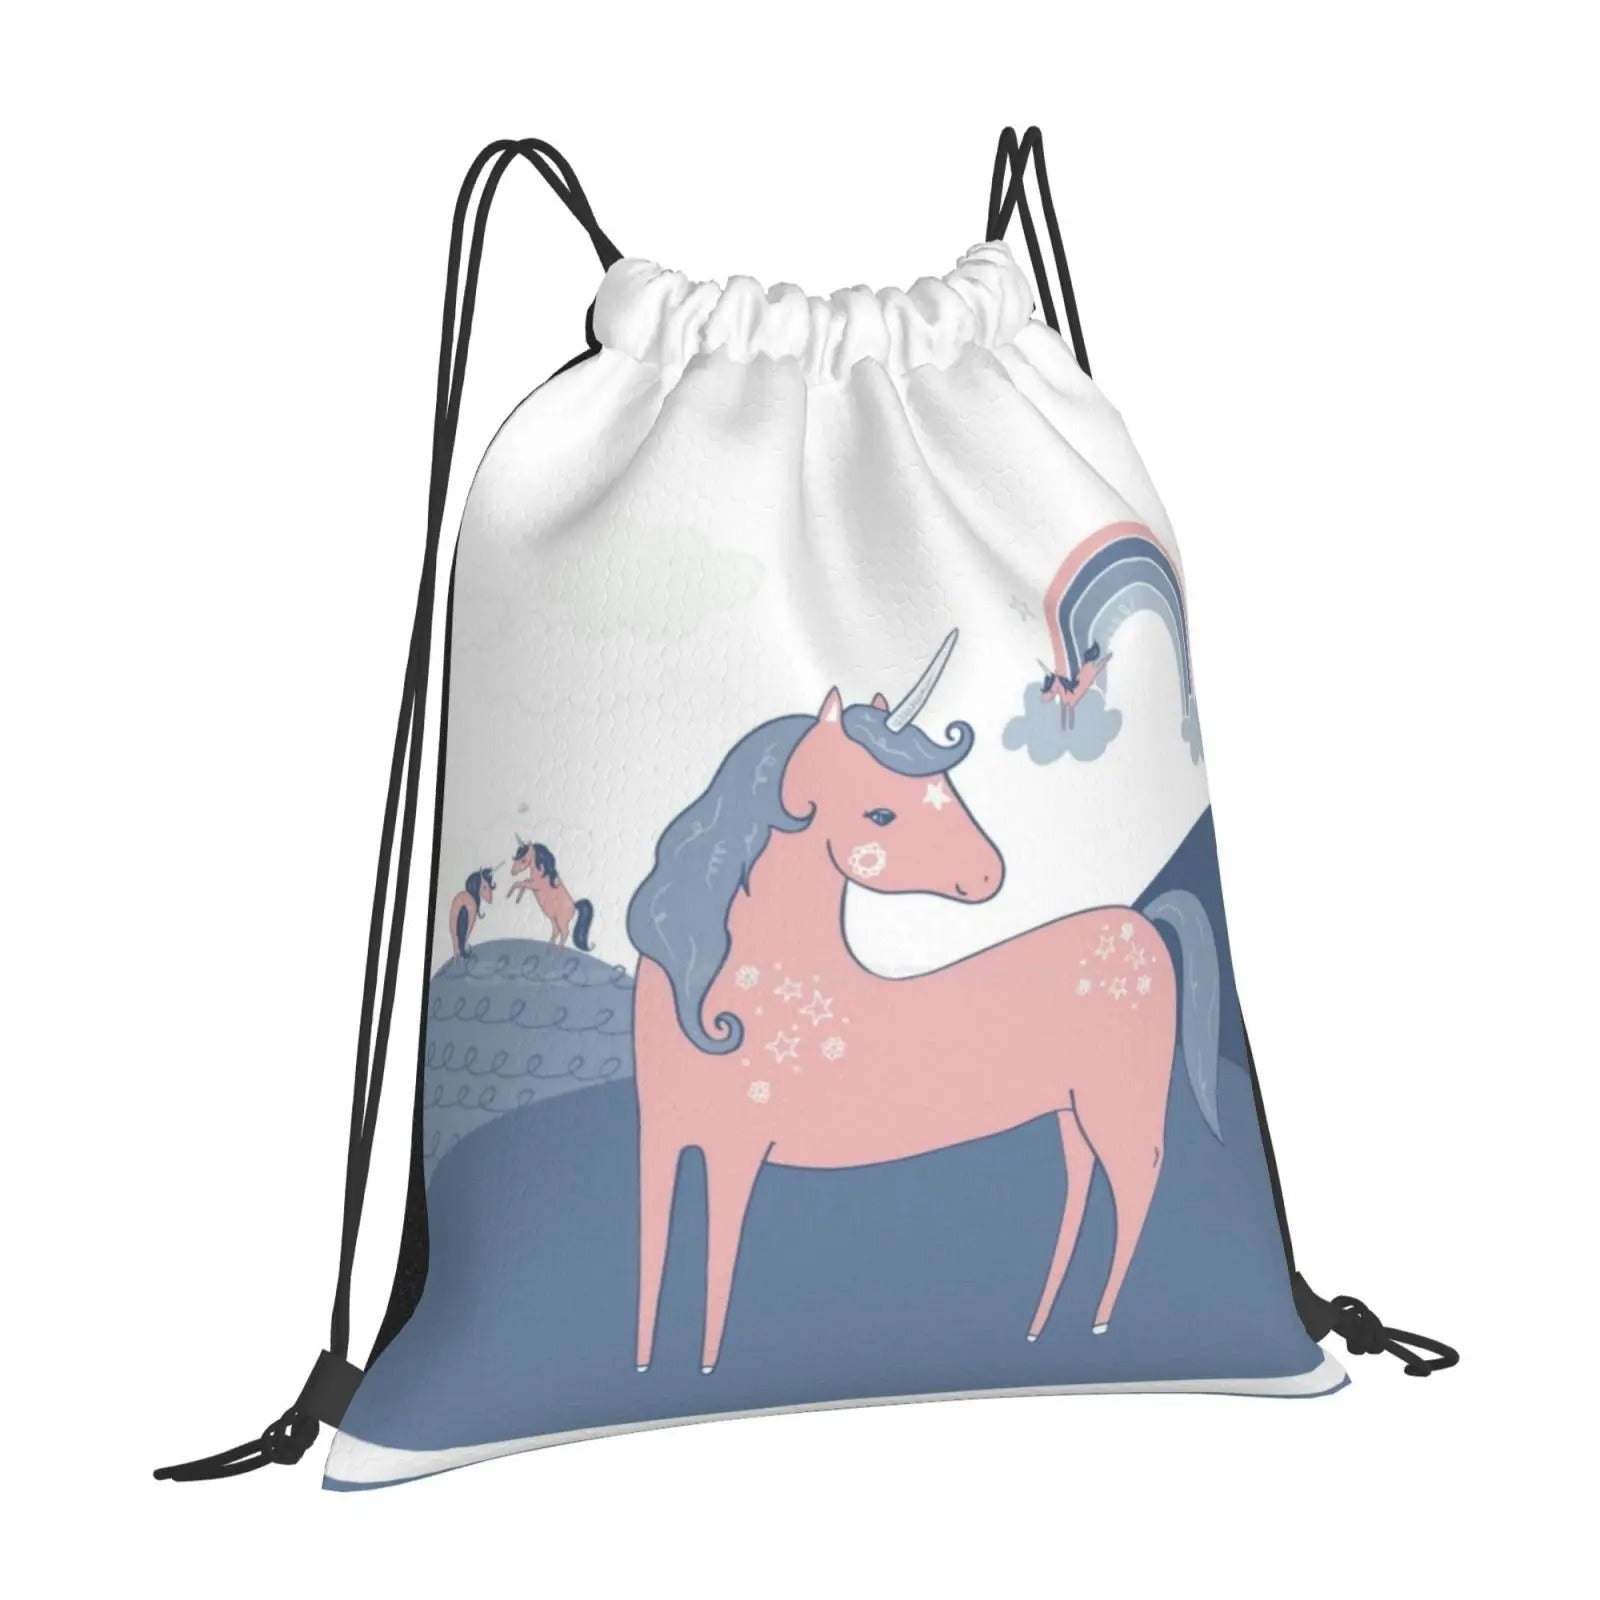 Childrens Horse Backpack - Drawstring Bag